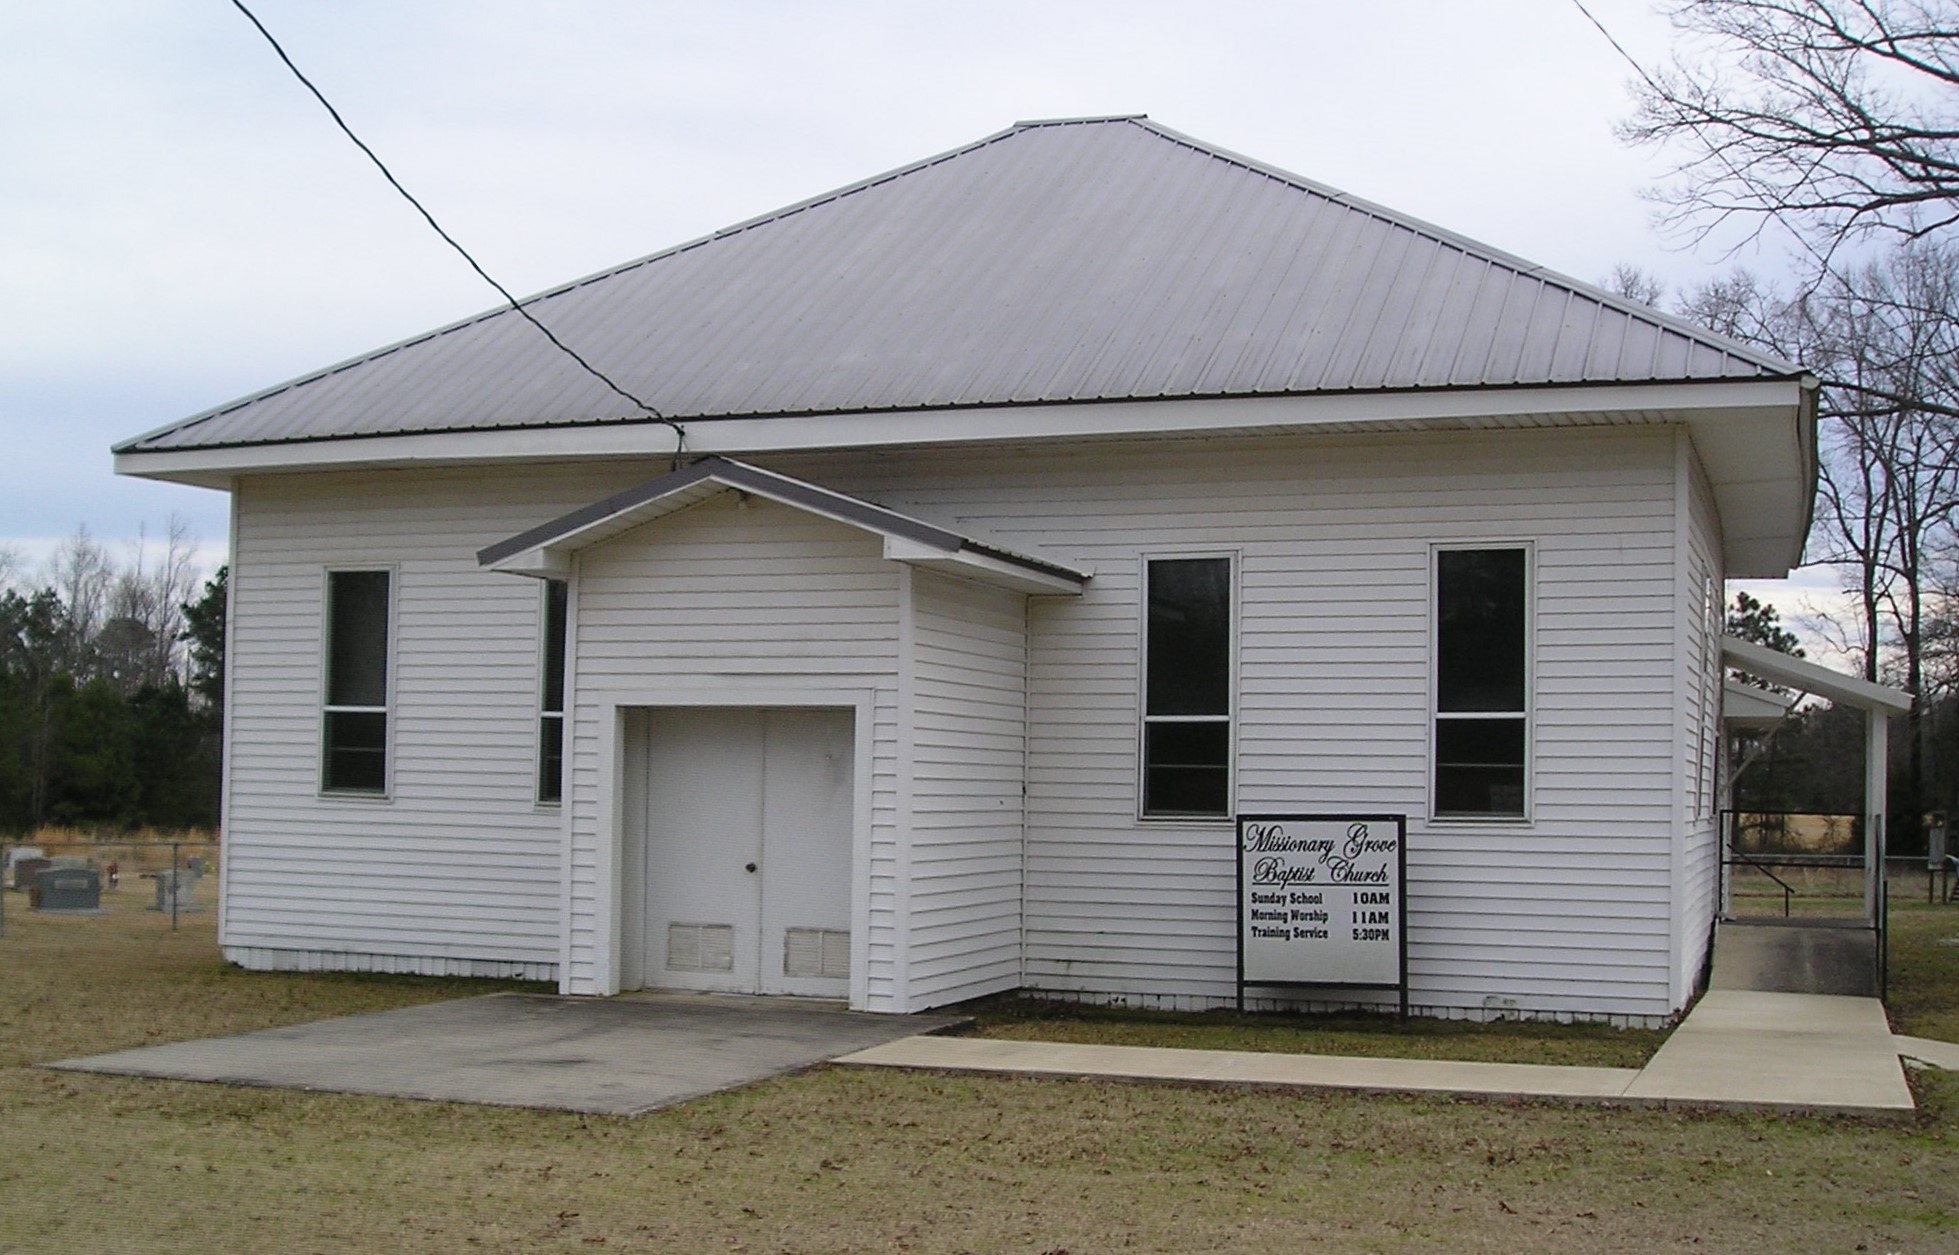 Missionary Grove Baptist Church